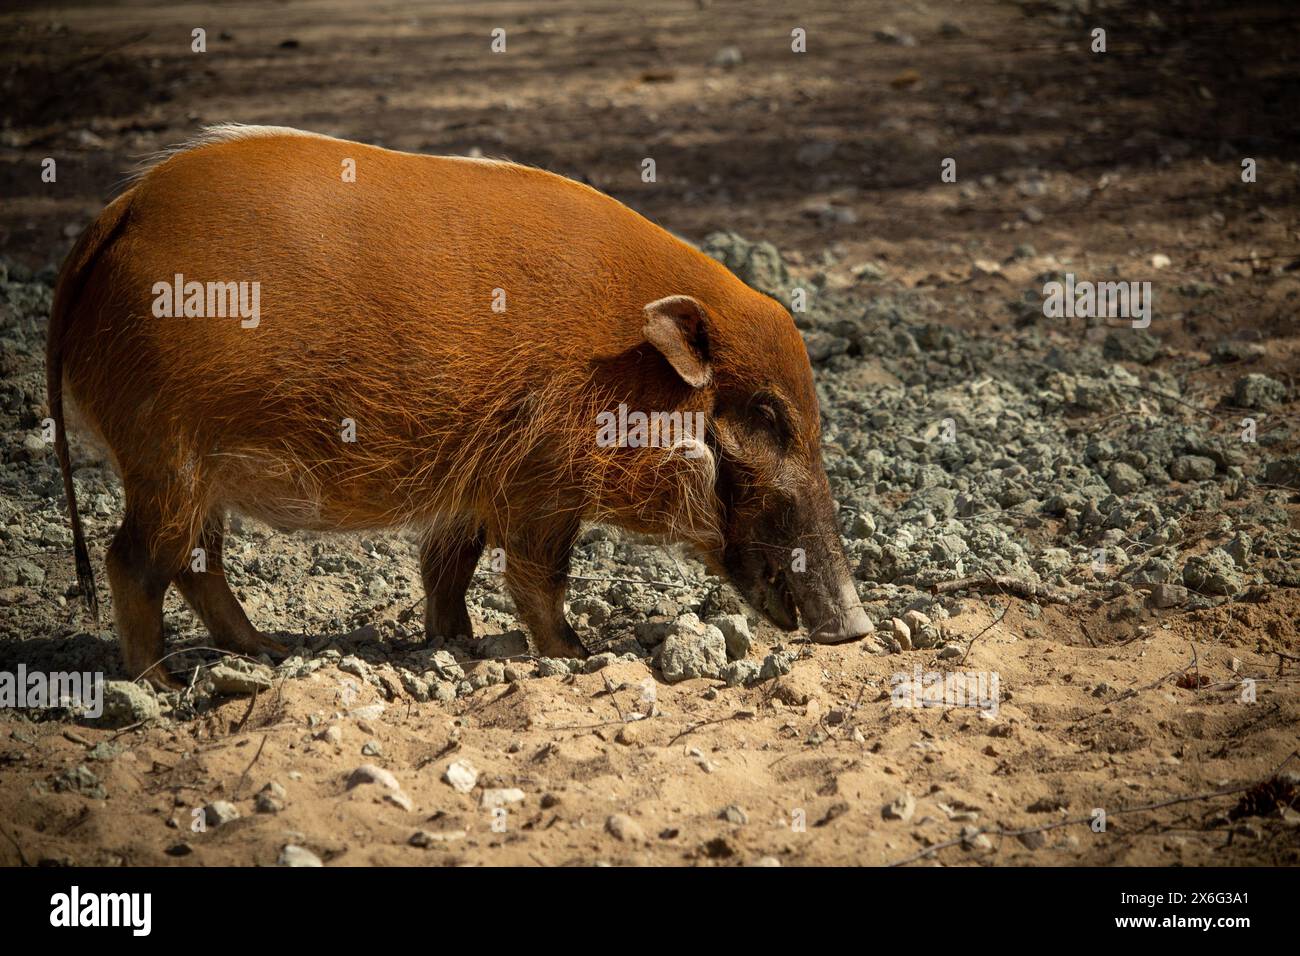 Rotschwein (Potamochoerus porcus) oder Buschschwein auf der Suche nach Nahrung. Stockfoto